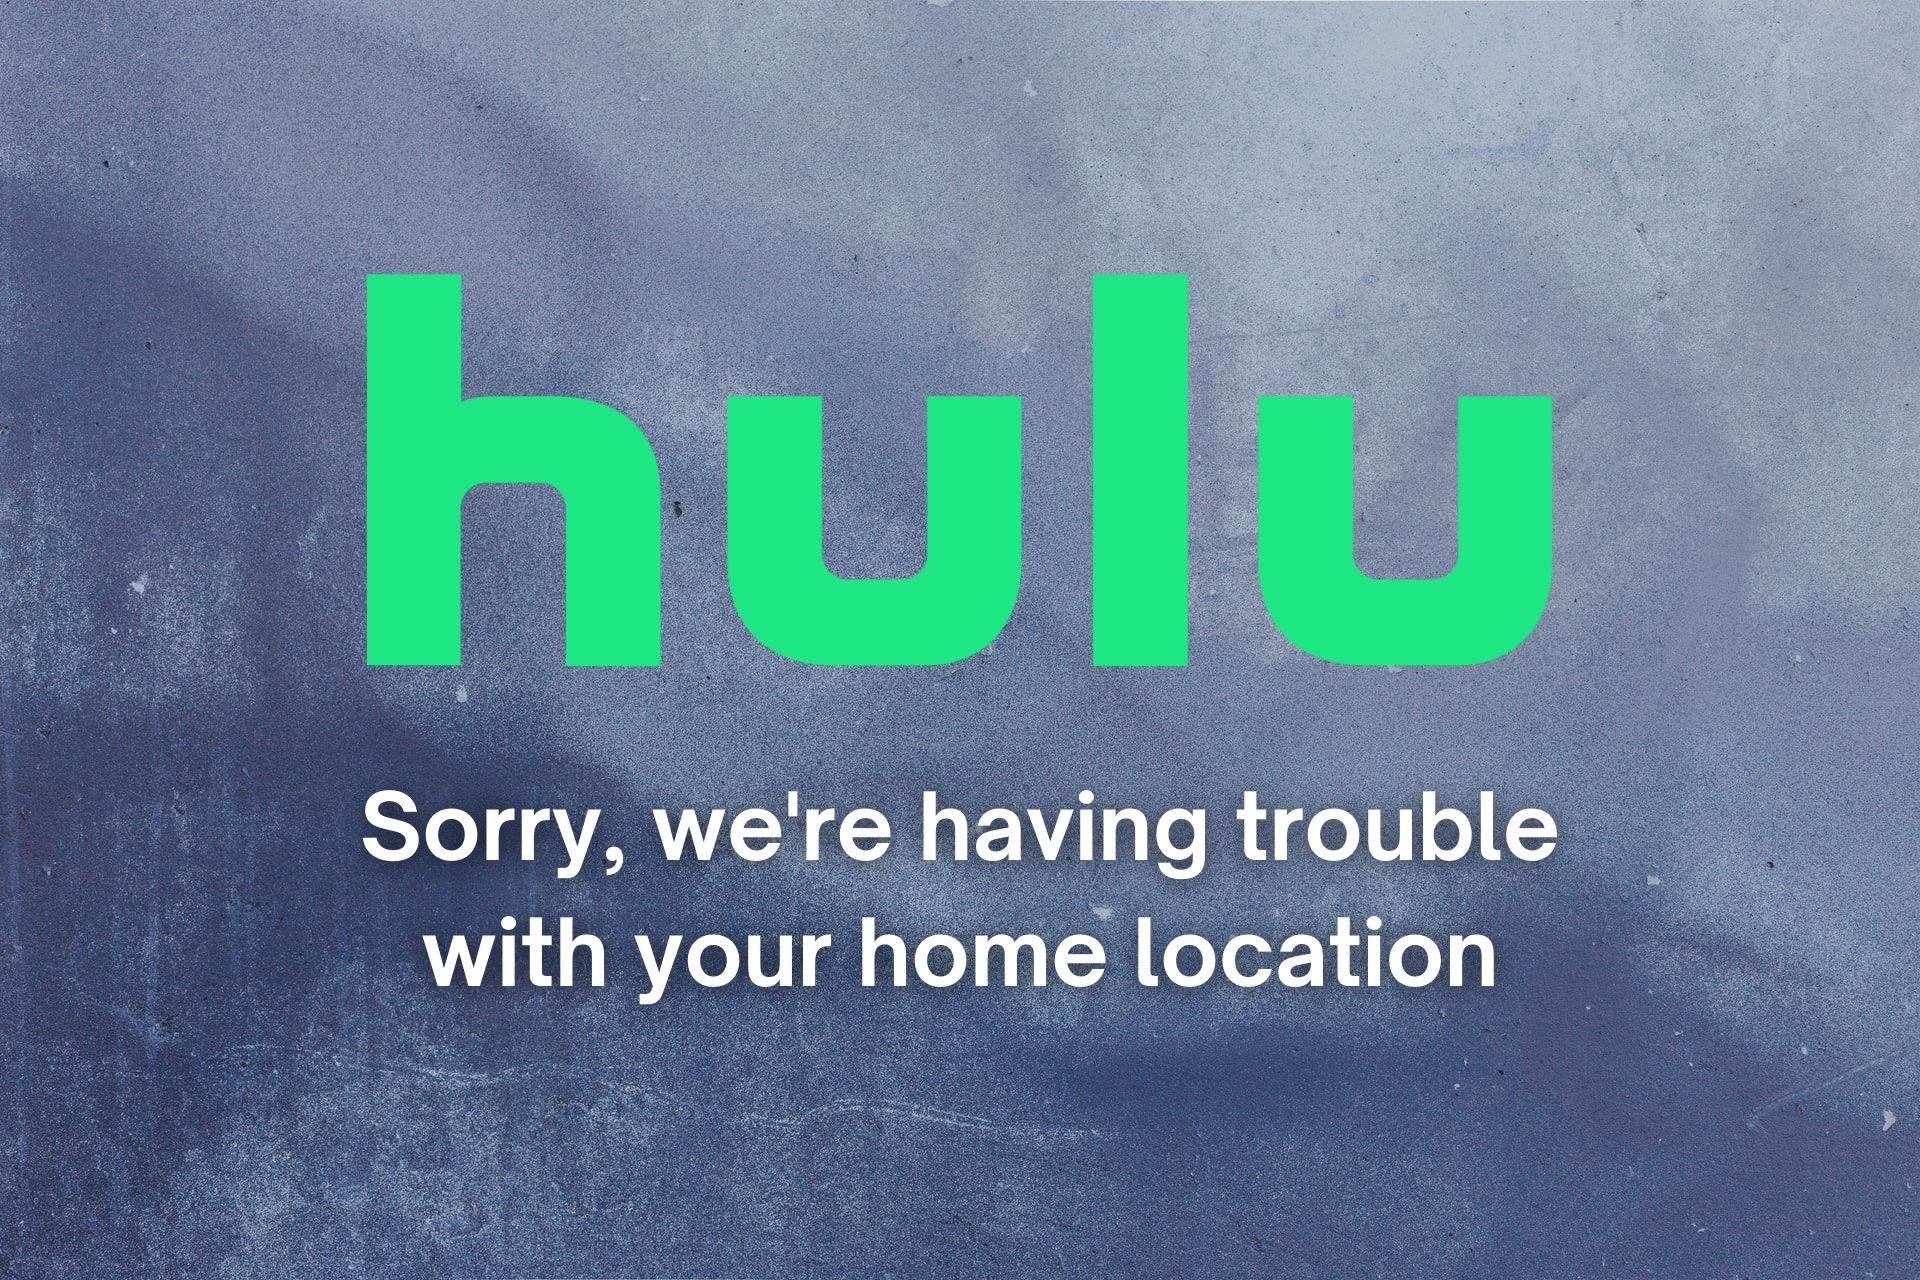 arreglar Lo sentimos, tenemos problemas con la ubicación de tu casa de Hulu